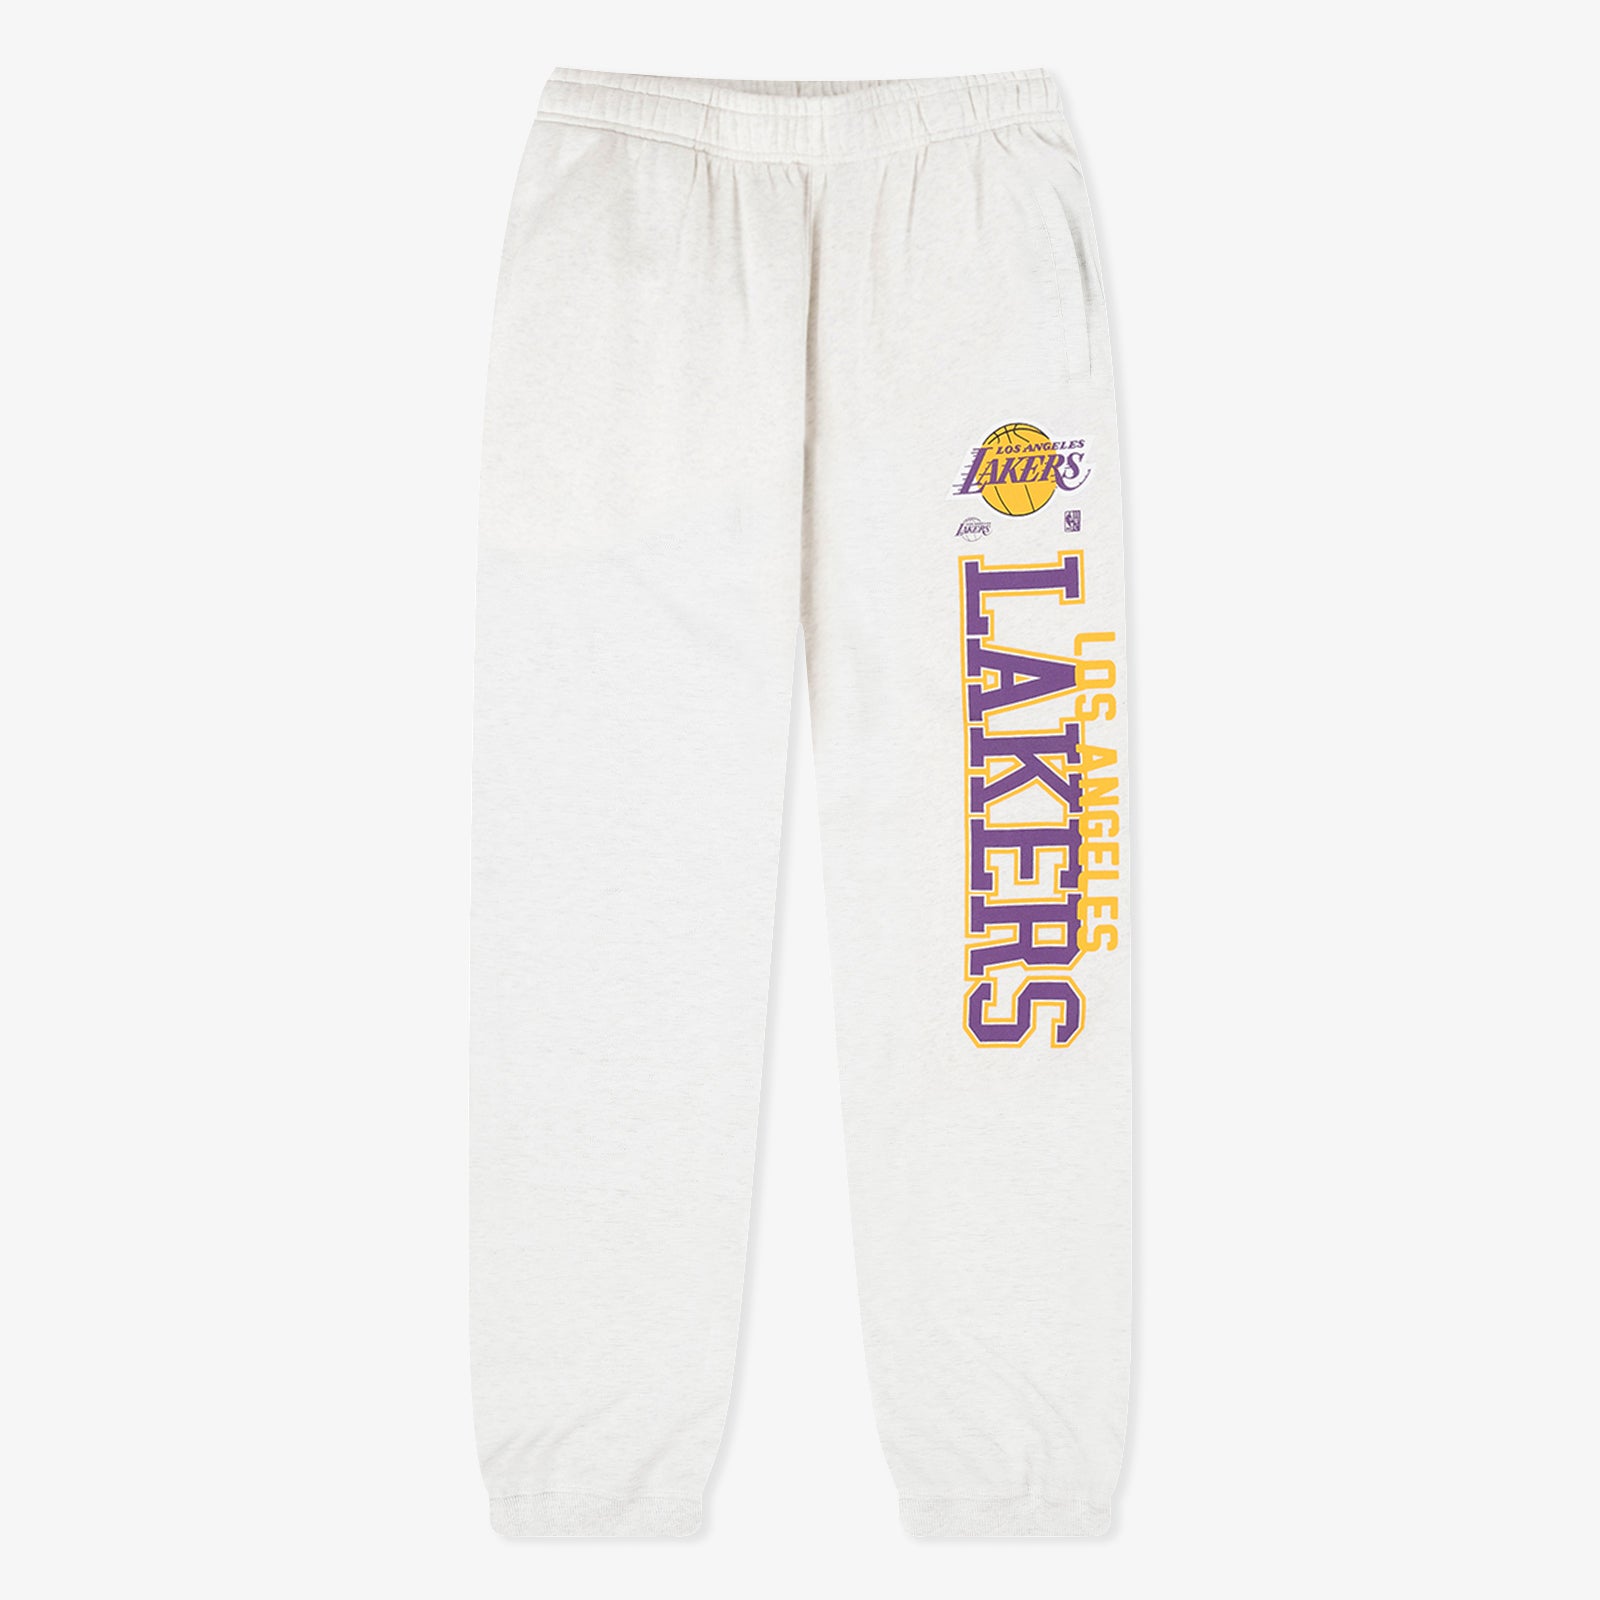 Aéropostale Los Angeles Lakers Jogger Sweatpants